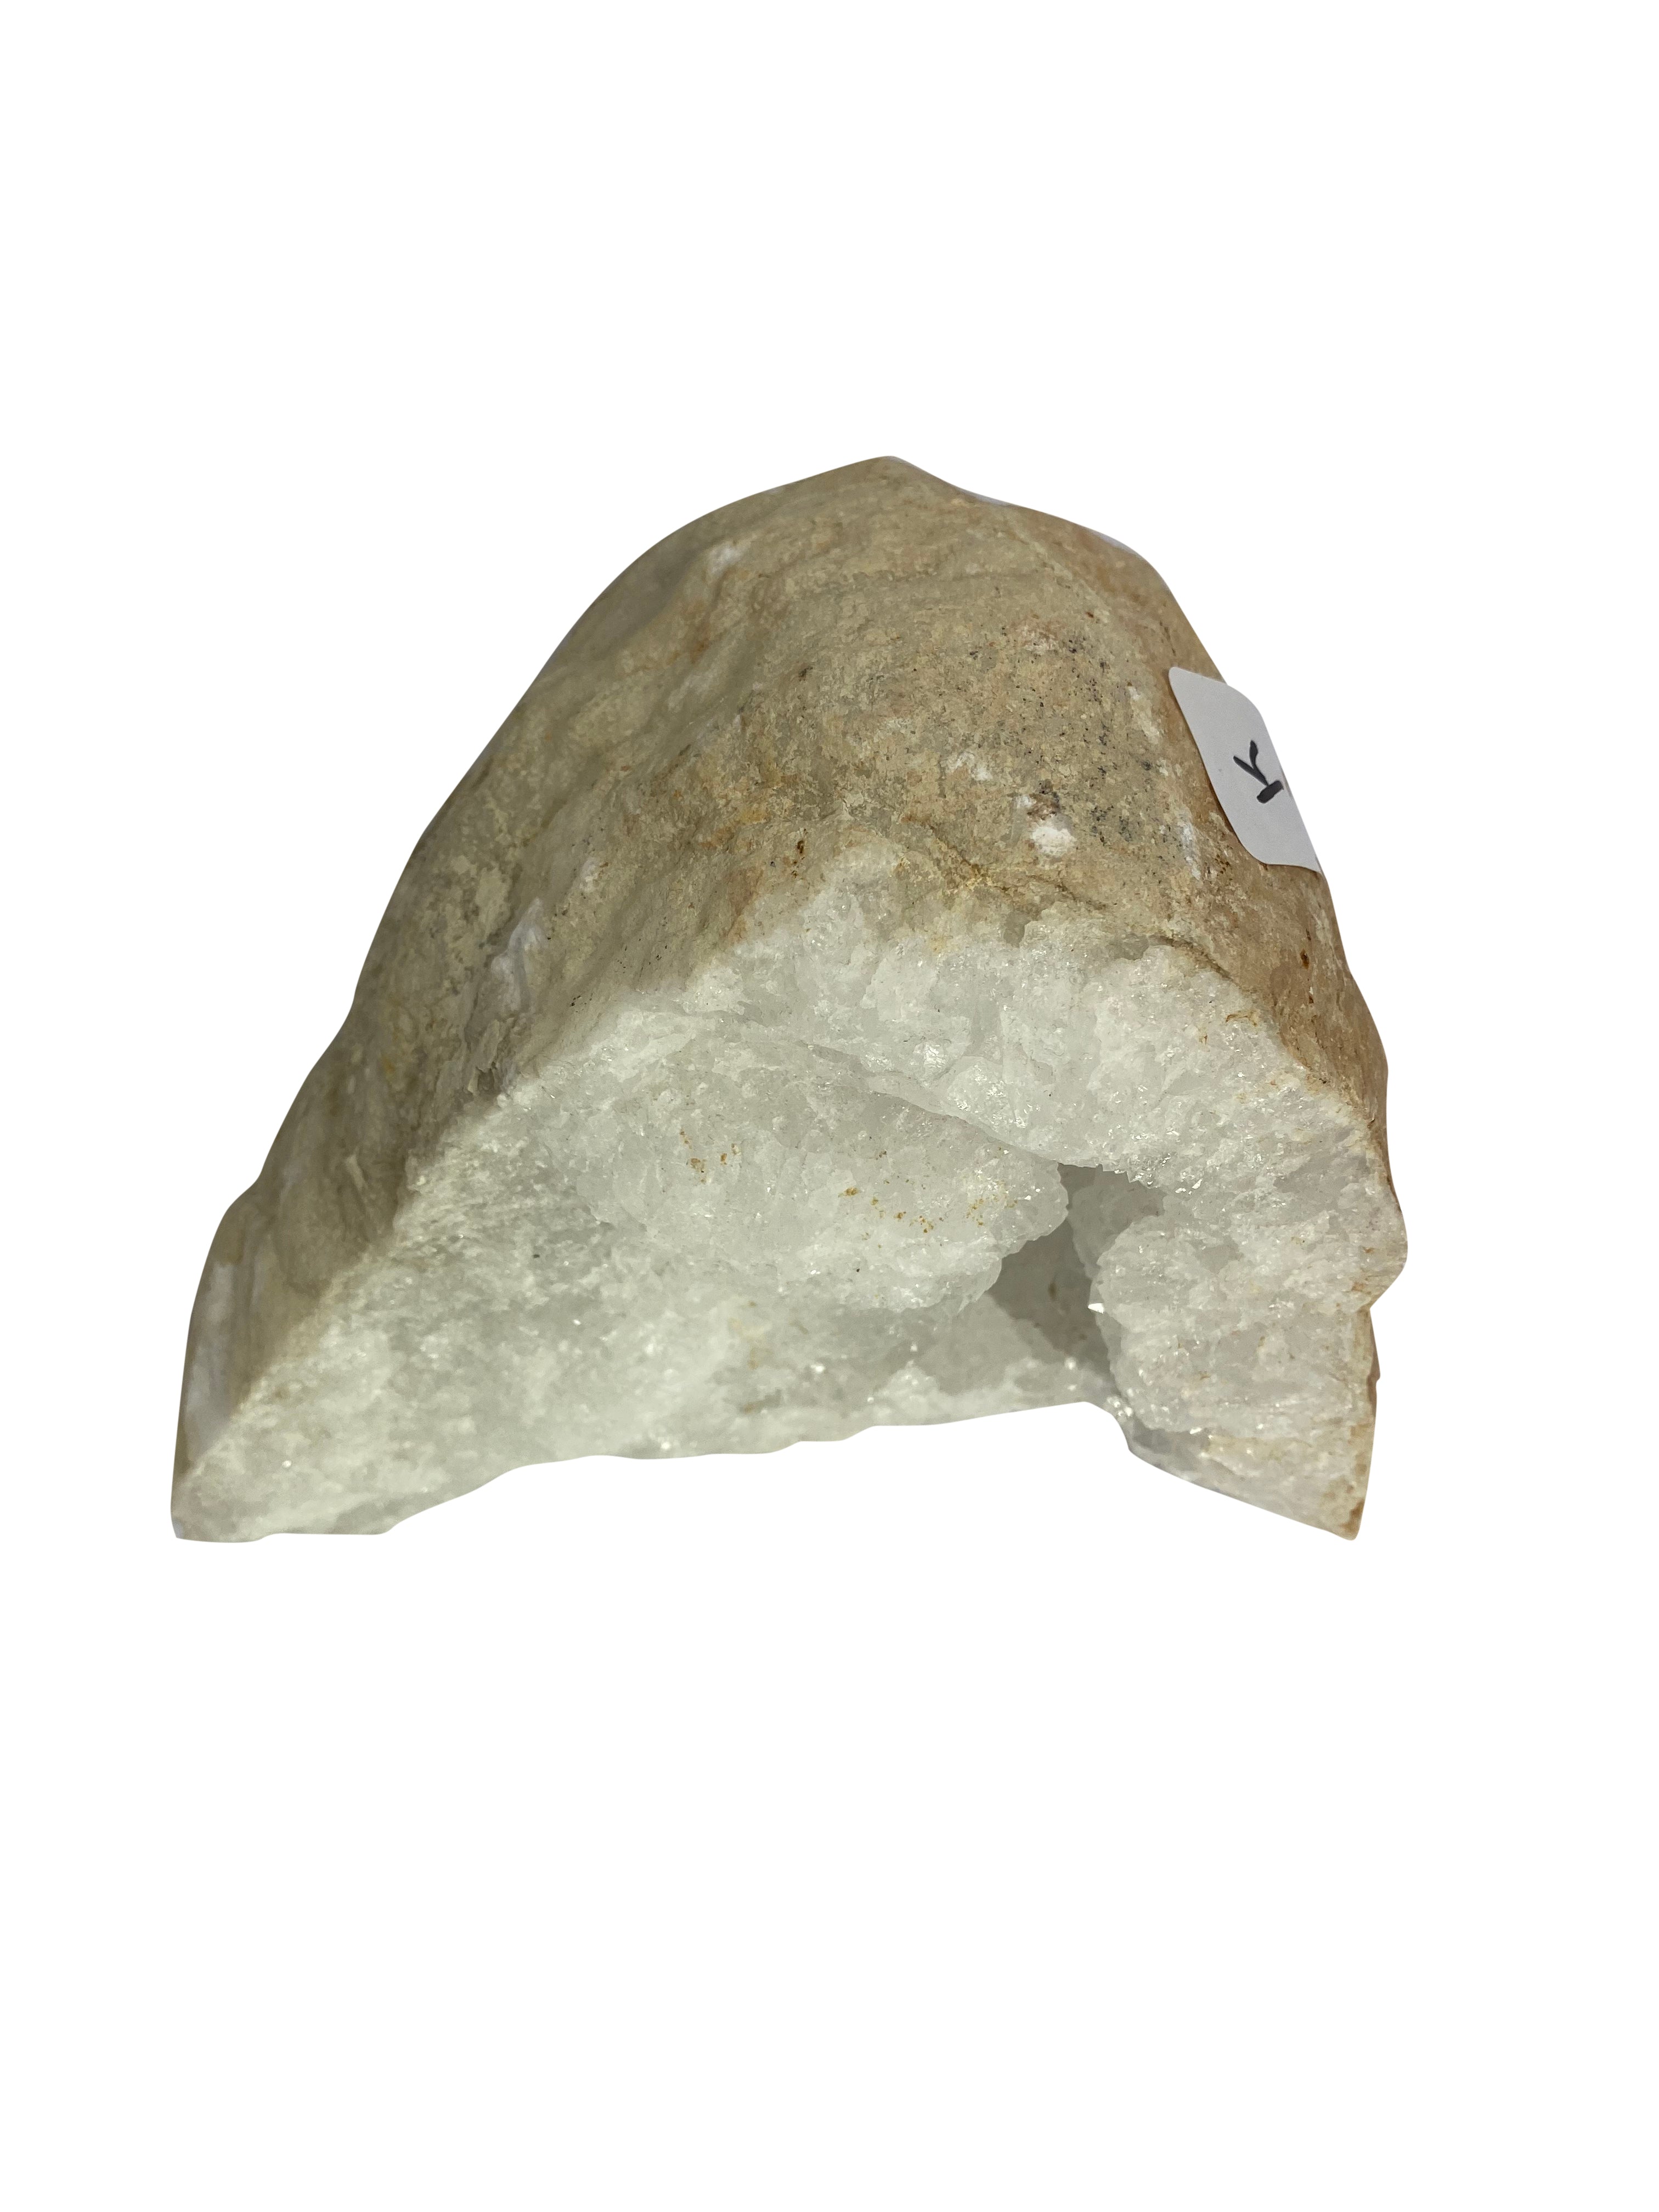 Clear Quartz Crystal Geode Cave K 3.8KG